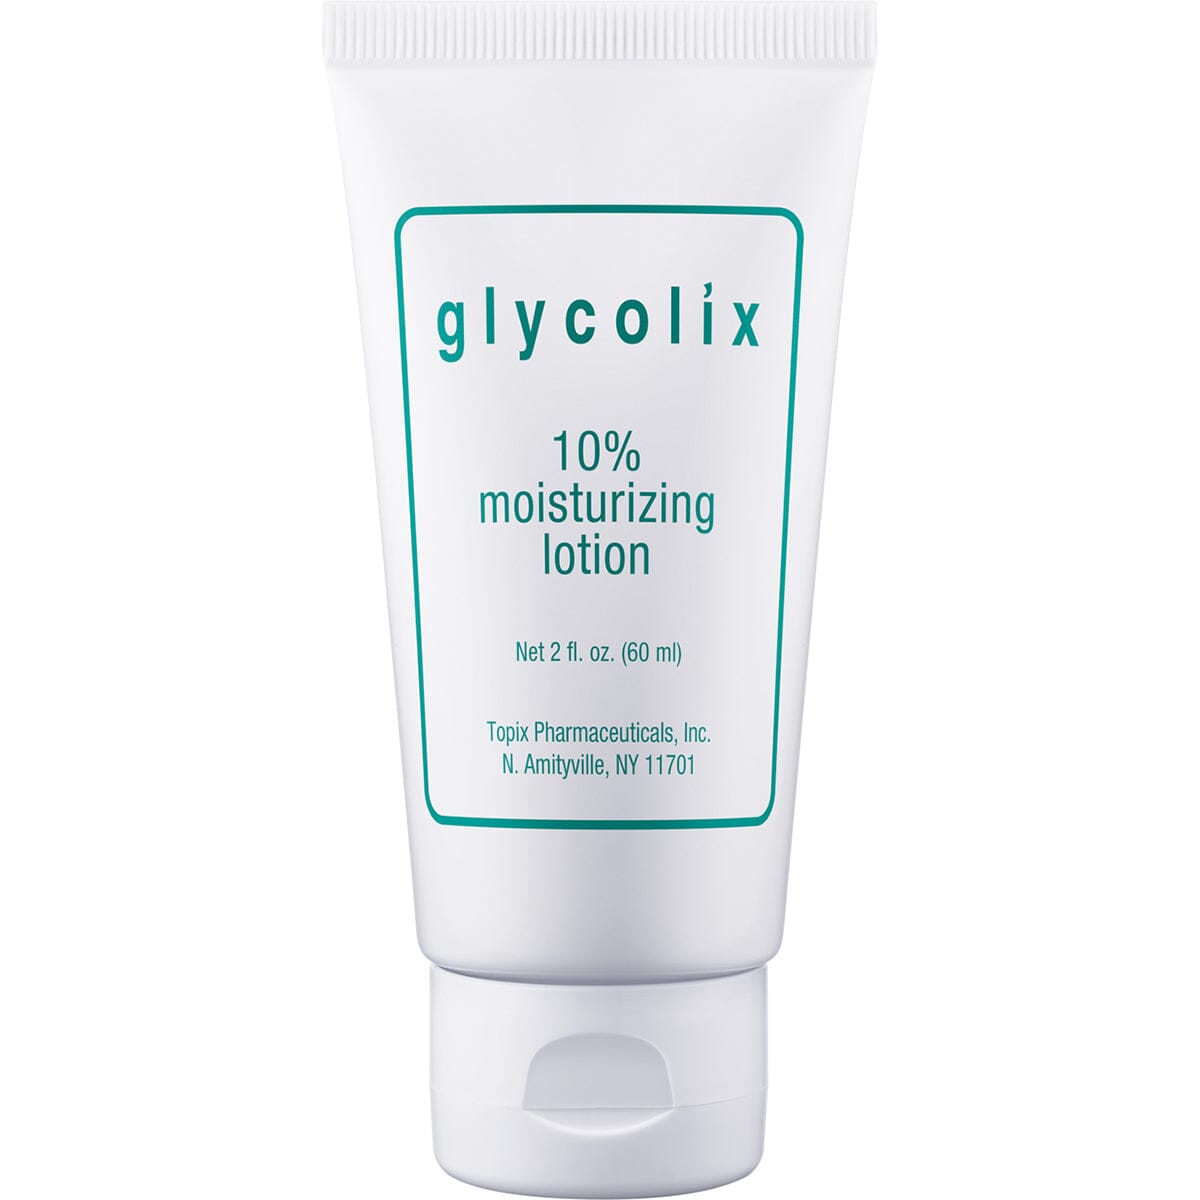 Glycolix 10% Moisturizing Lotion Glycolix 2.0 fl. oz. Shop at Exclusive Beauty Club